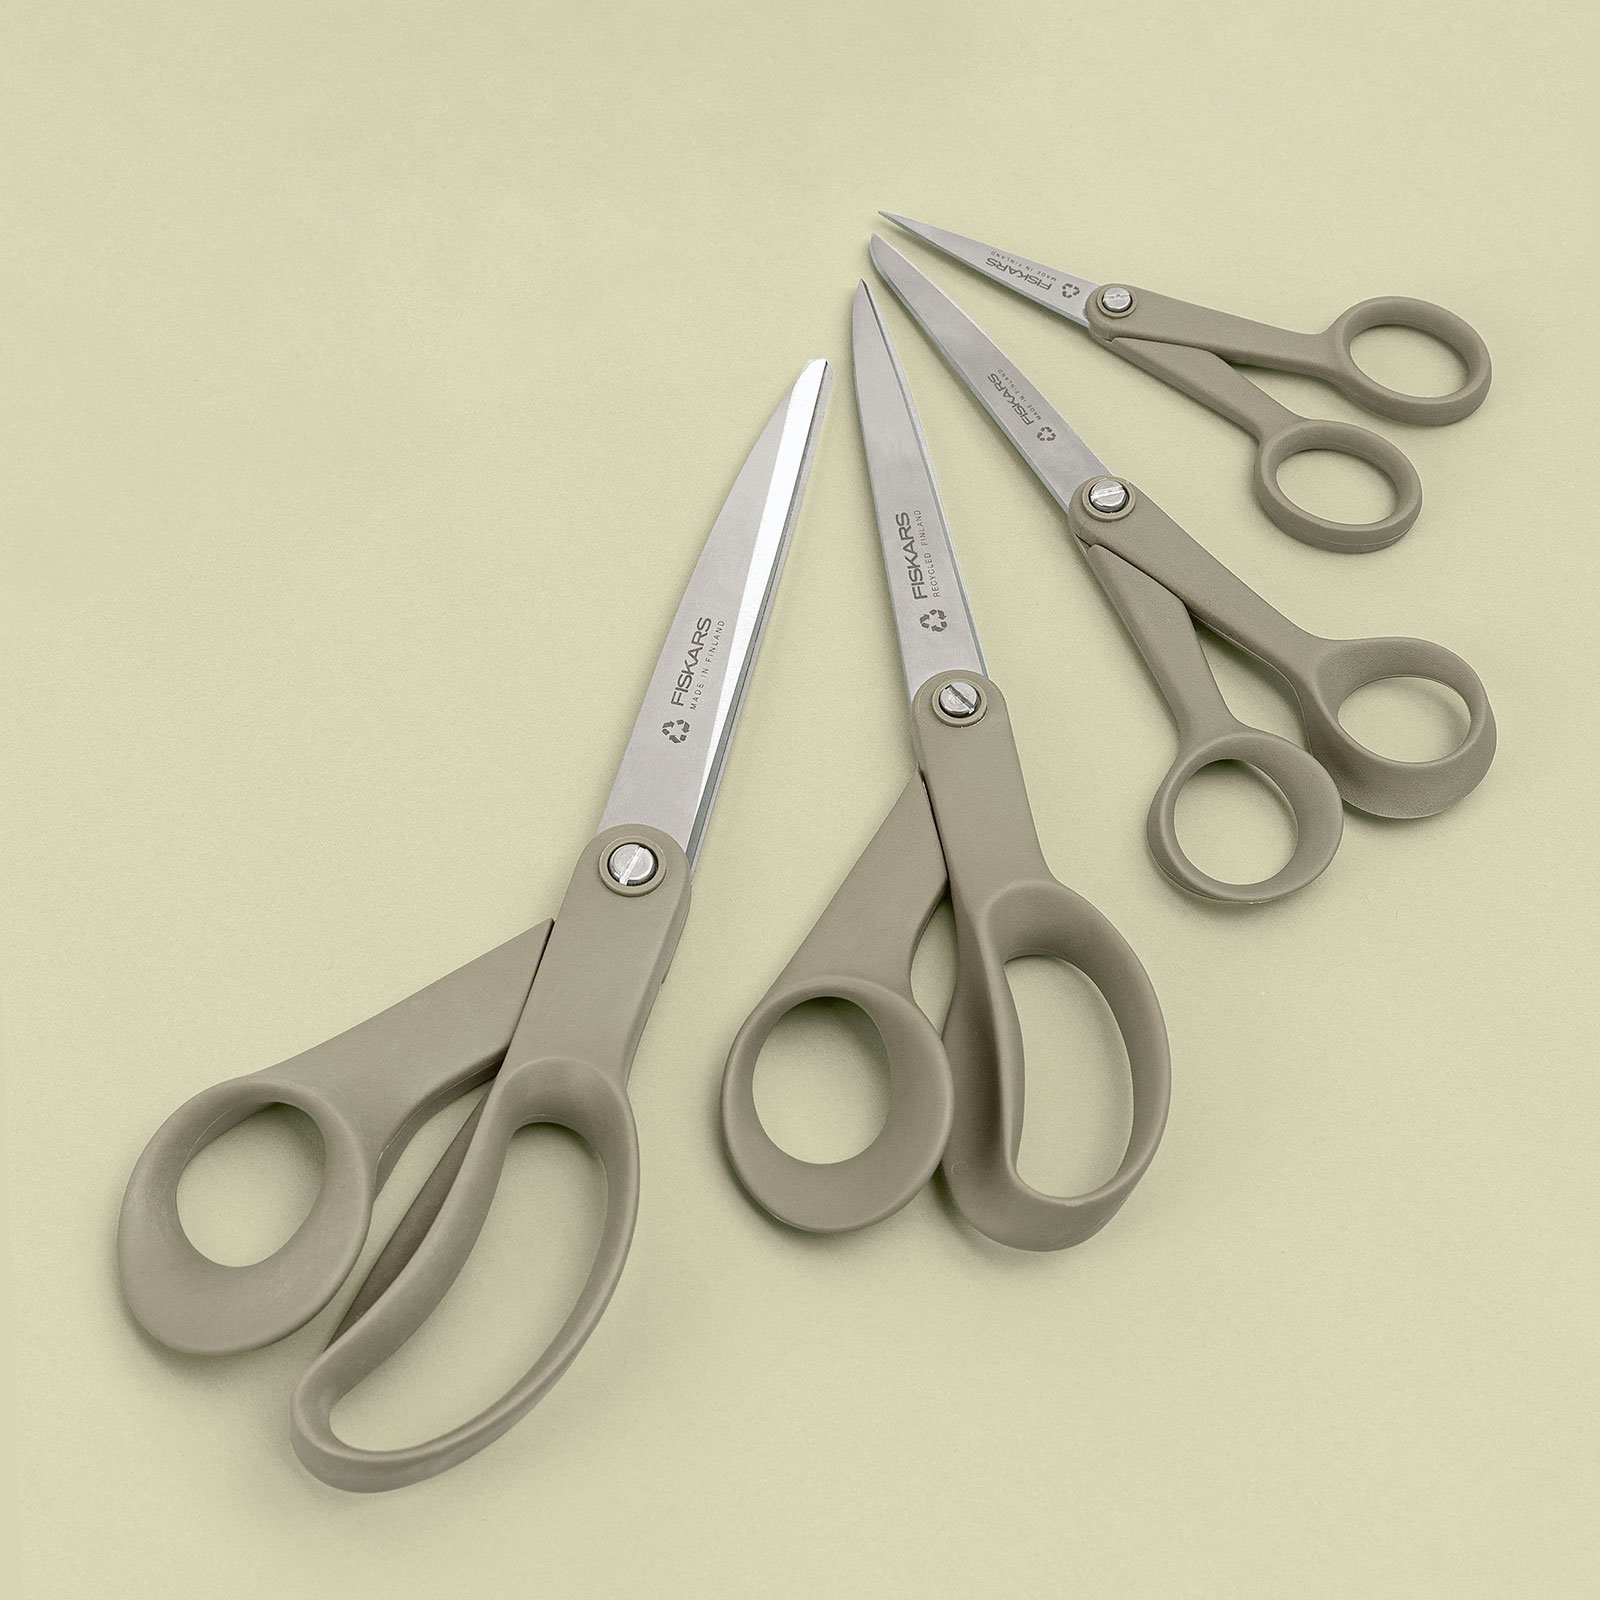 Fiskars ReNew universal scissors 21cm 42030_42031_42032_42033_sskit